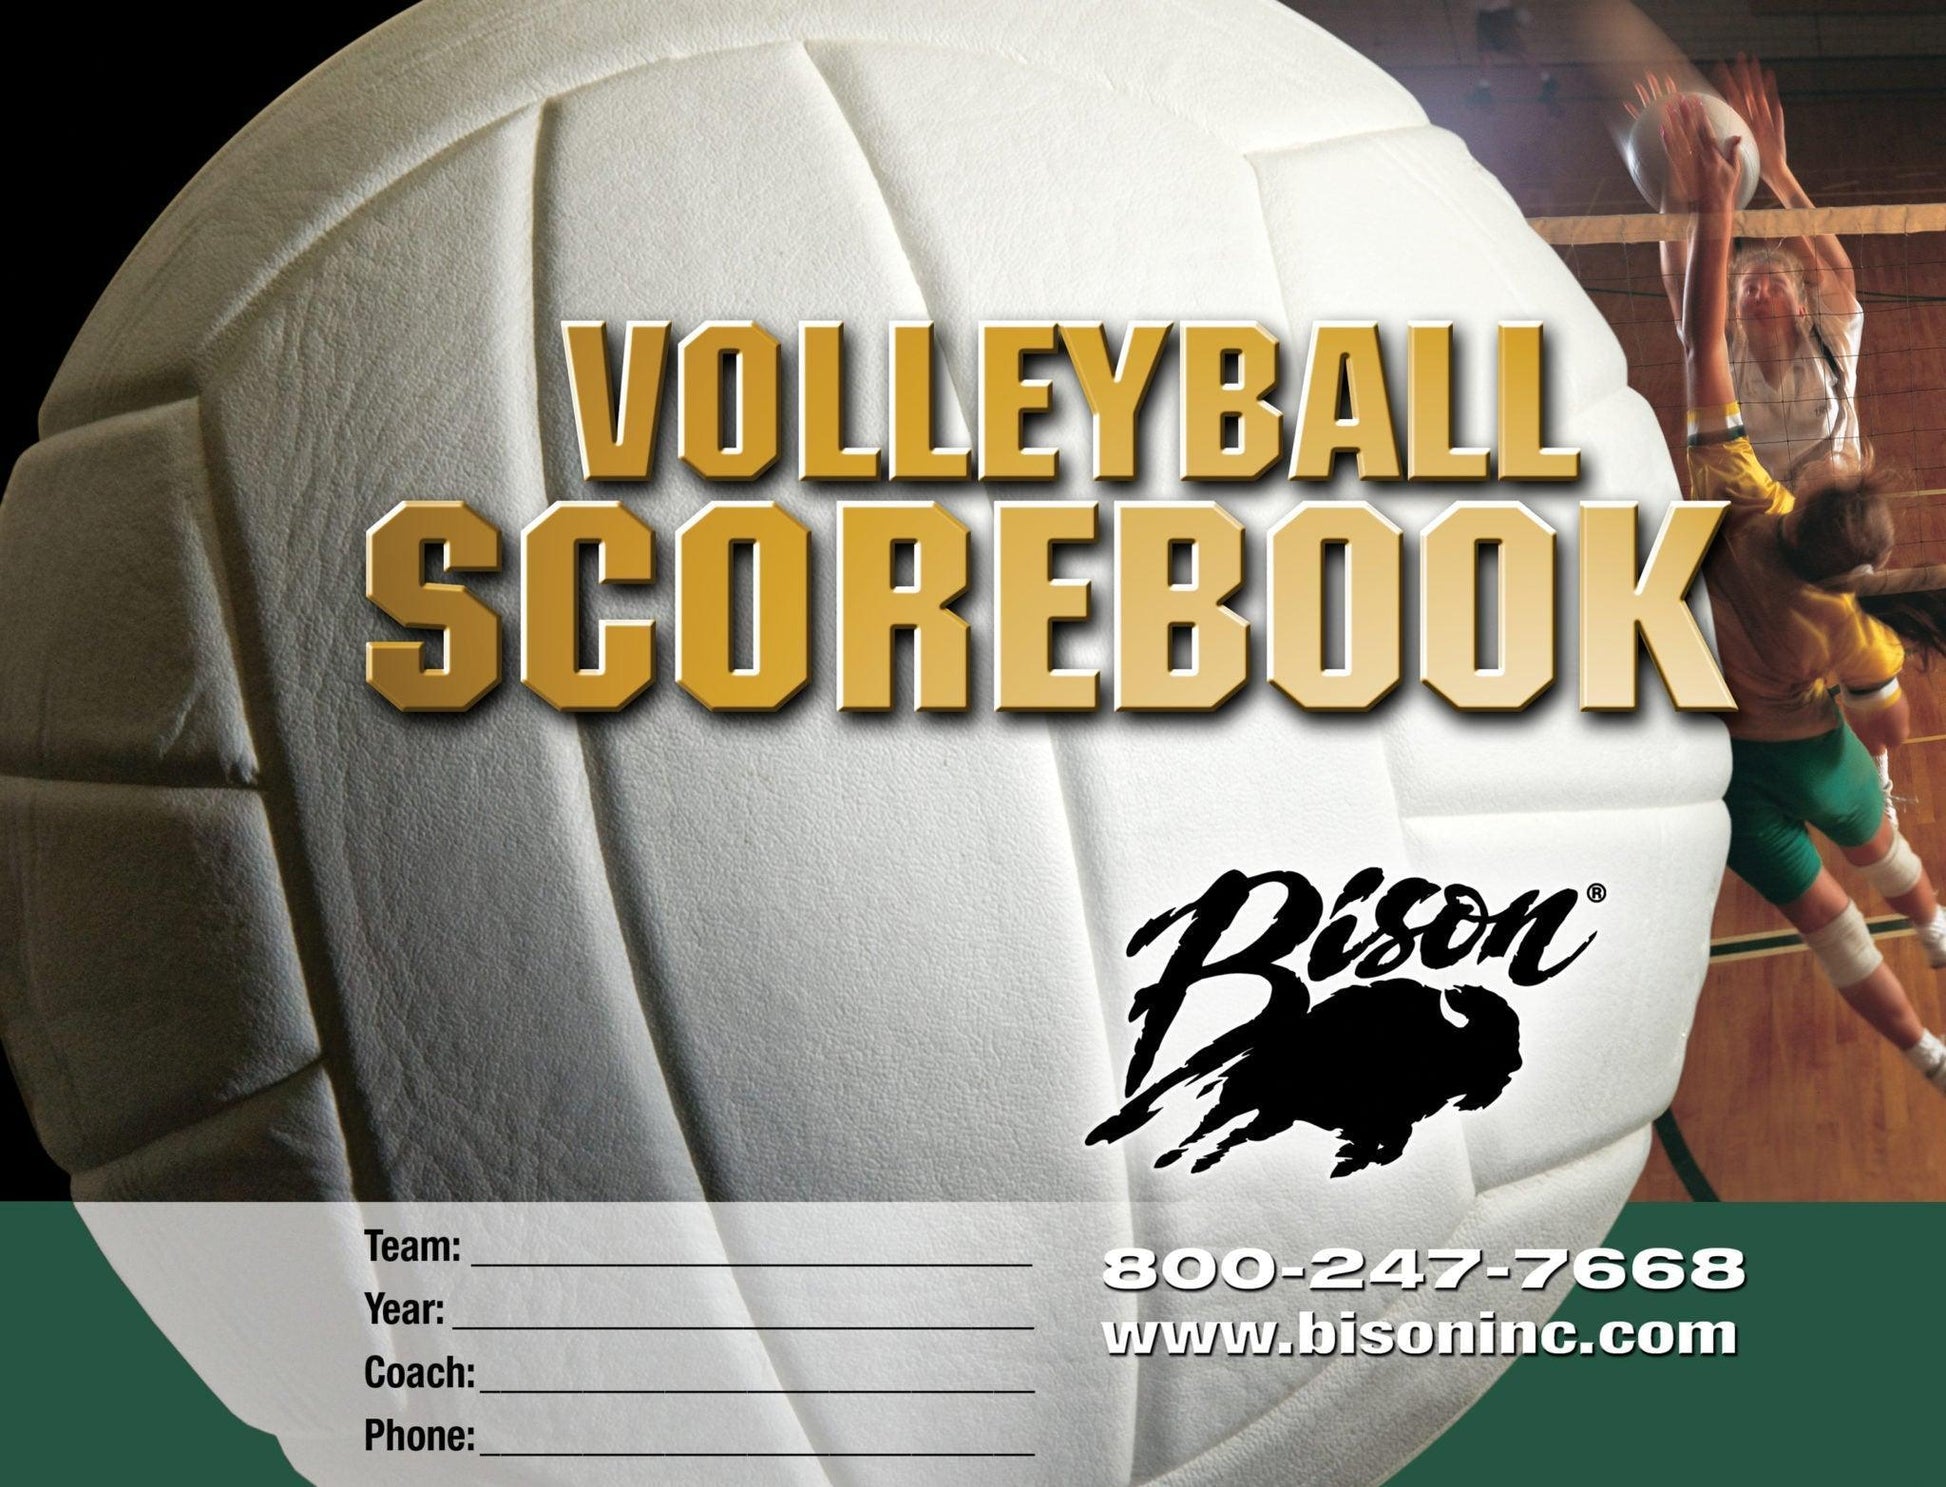 Bison Volleyball Team Scorebook - bisoninc